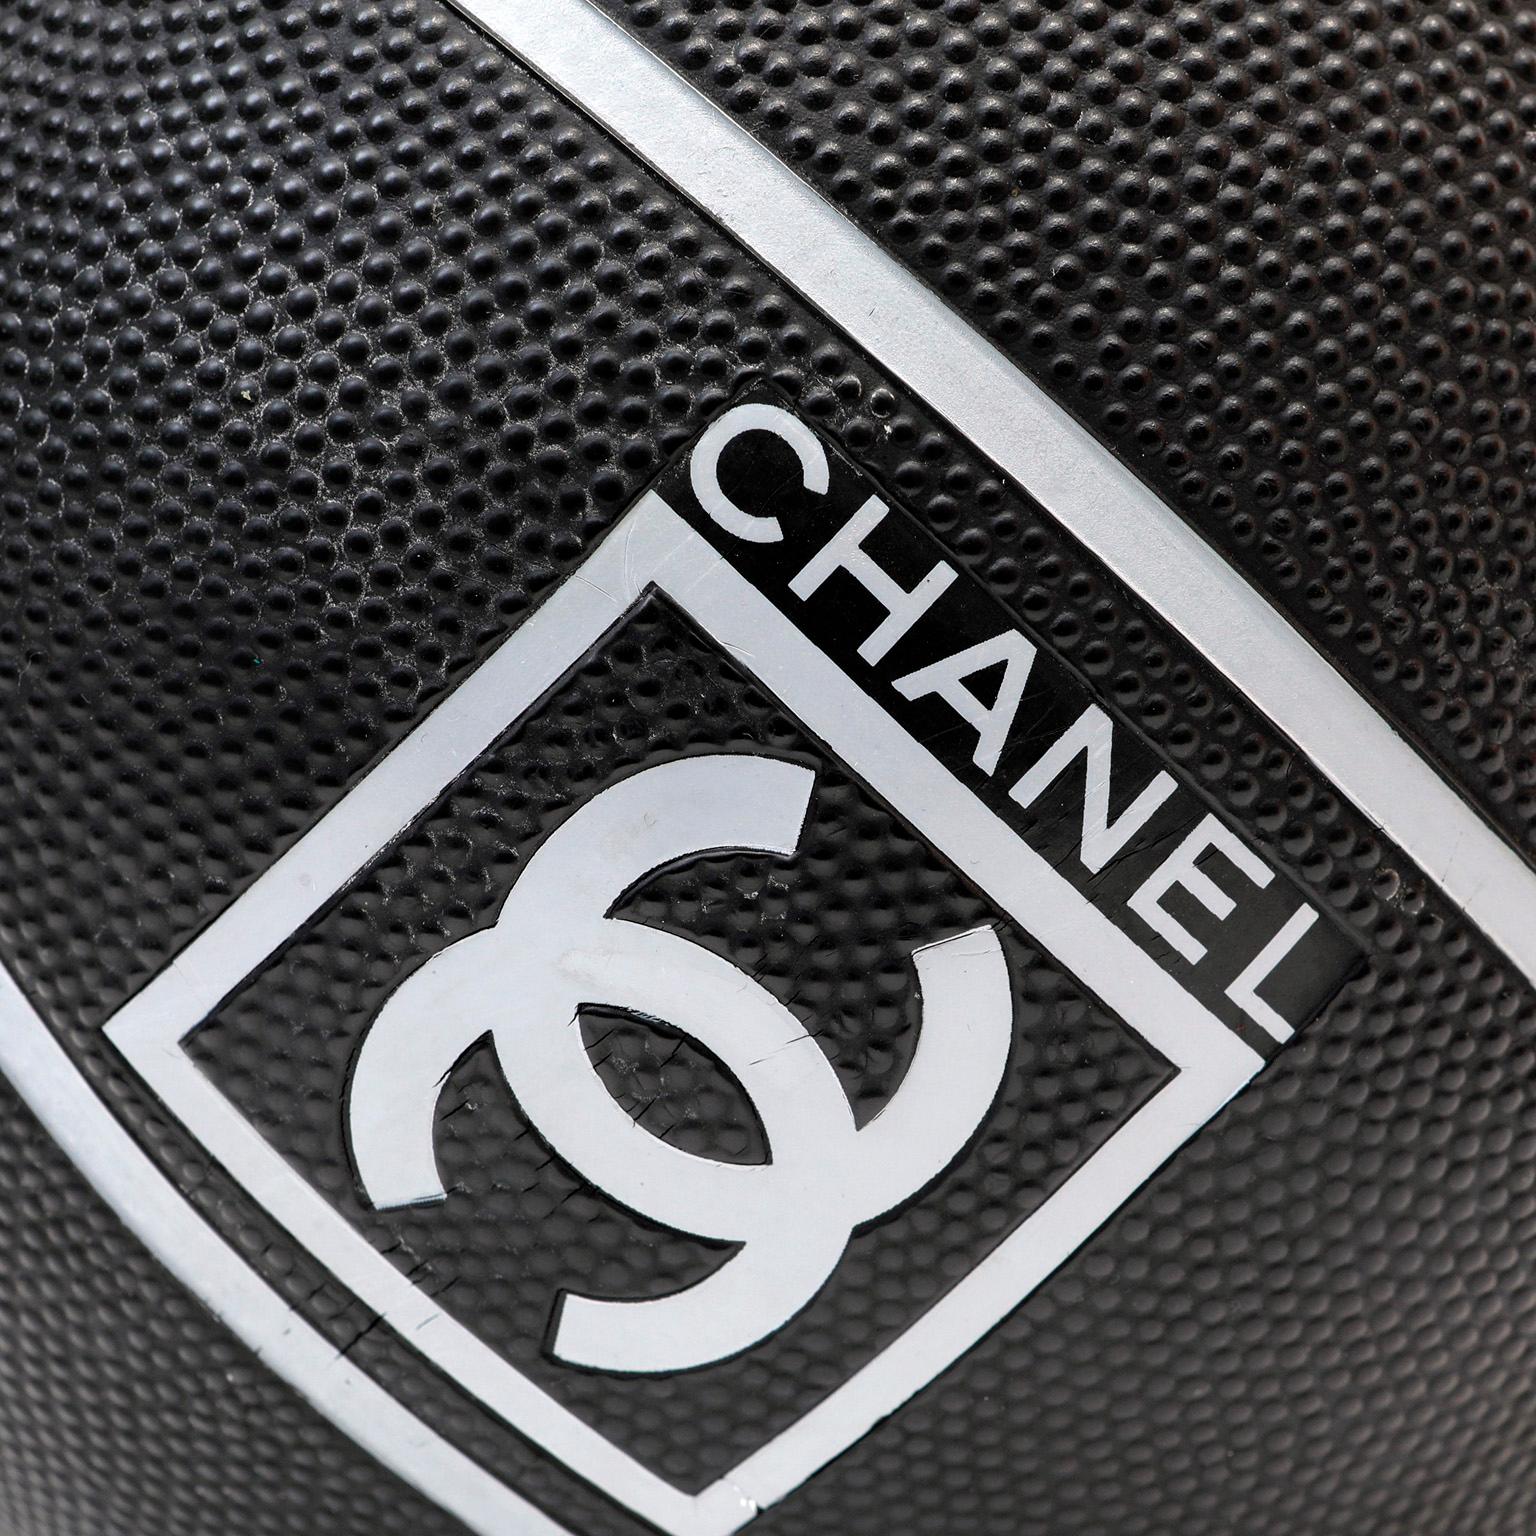  Diese authentische Chanel Schwarz-Weiß-Spiel-Serie Rugby-Fußball ist in tadellosem Zustand. Seltenes und sammelwürdiges Objekt.   

PBF 13076